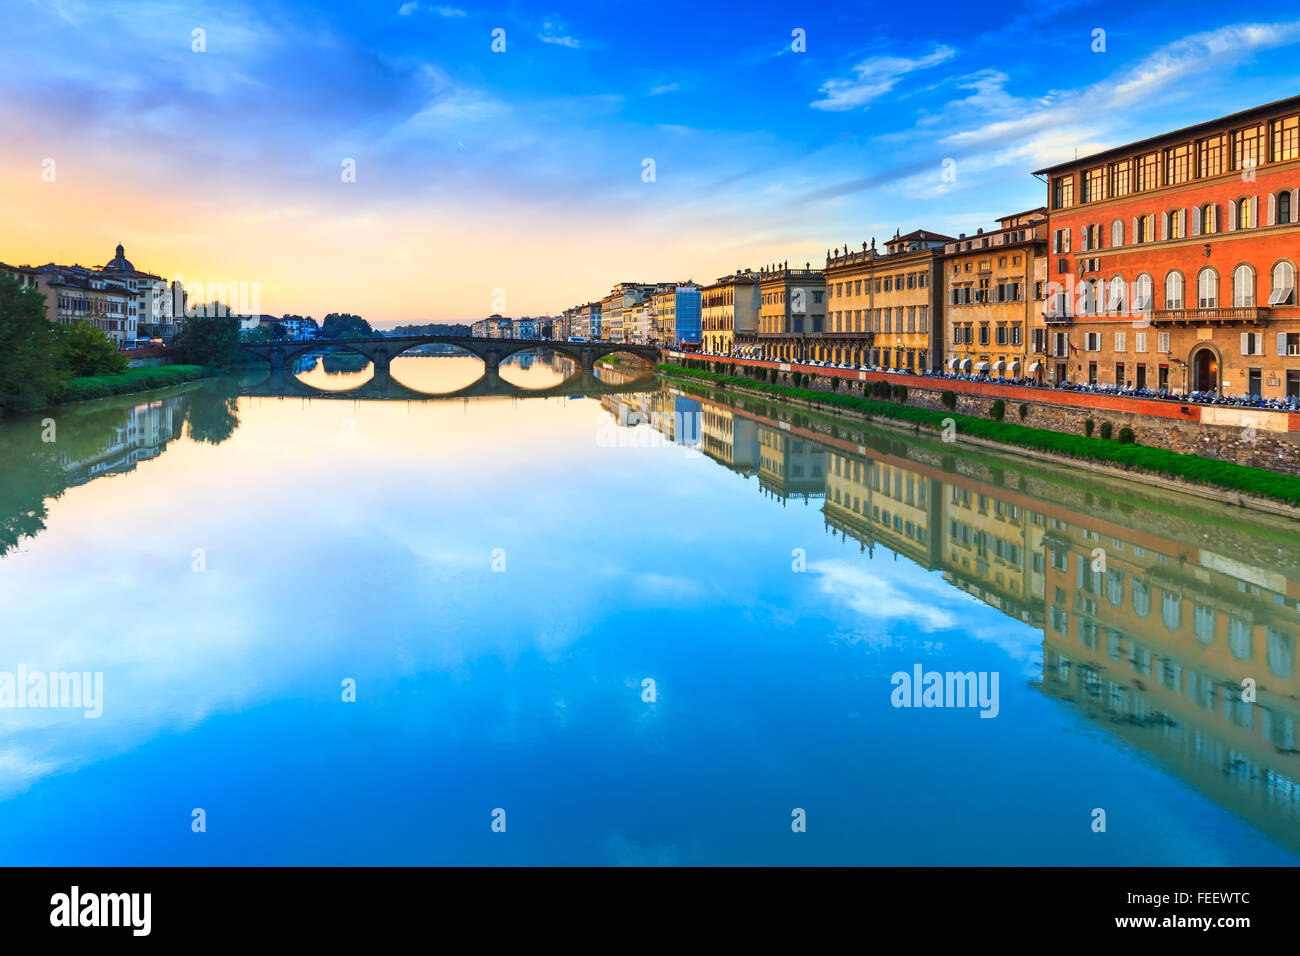 Florenz, Ponte Alla Carraia mittelalterliche Brücke Wahrzeichen am Fluss Arno, Sonnenuntergang Landschaft mit Reflexion. Es ist das zweite älteste b Stockfoto